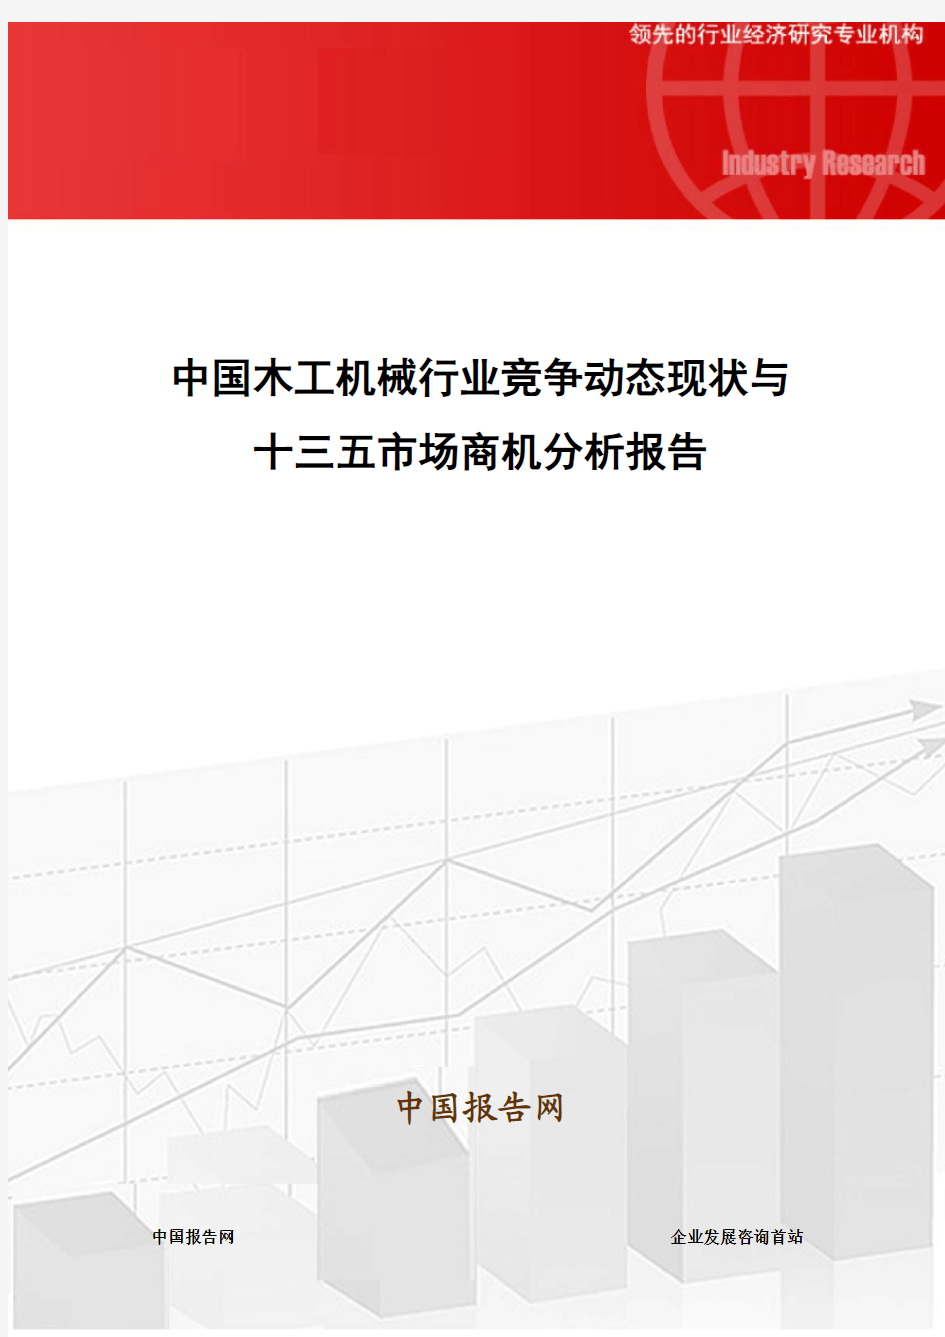 中国木工机械行业竞争动态现状与十三五市场商机分析报告